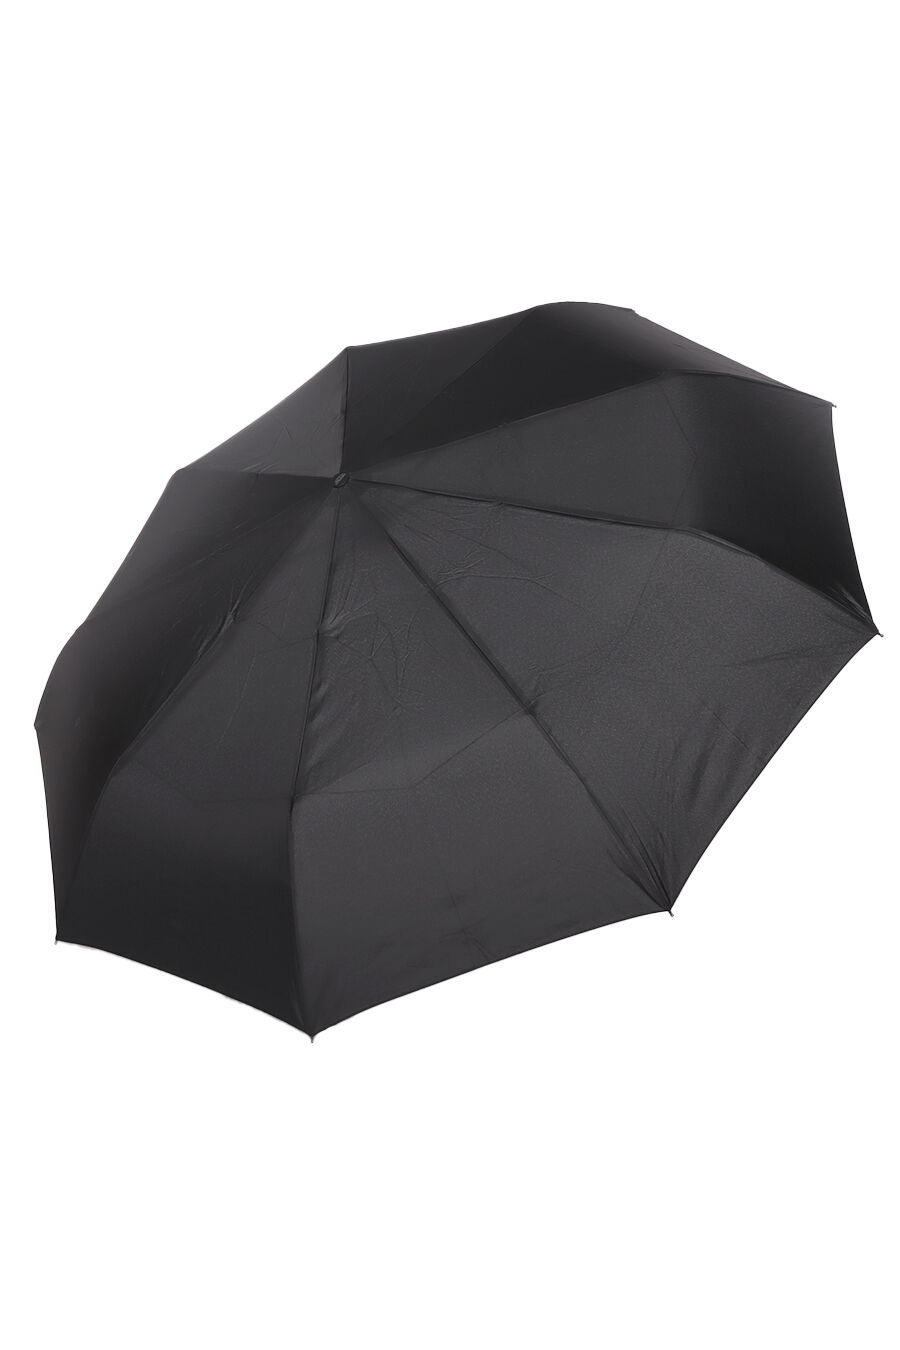 Зонт муж. Umbrella 13060 полный автомат (черный)